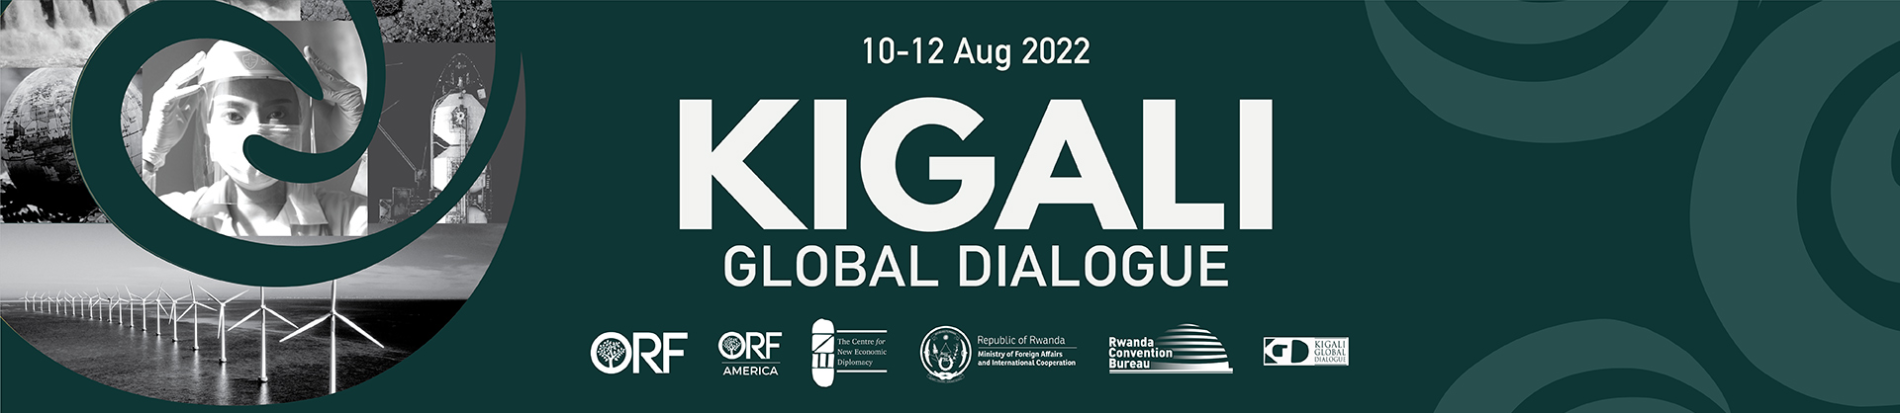 Kigali Global Dialogue  